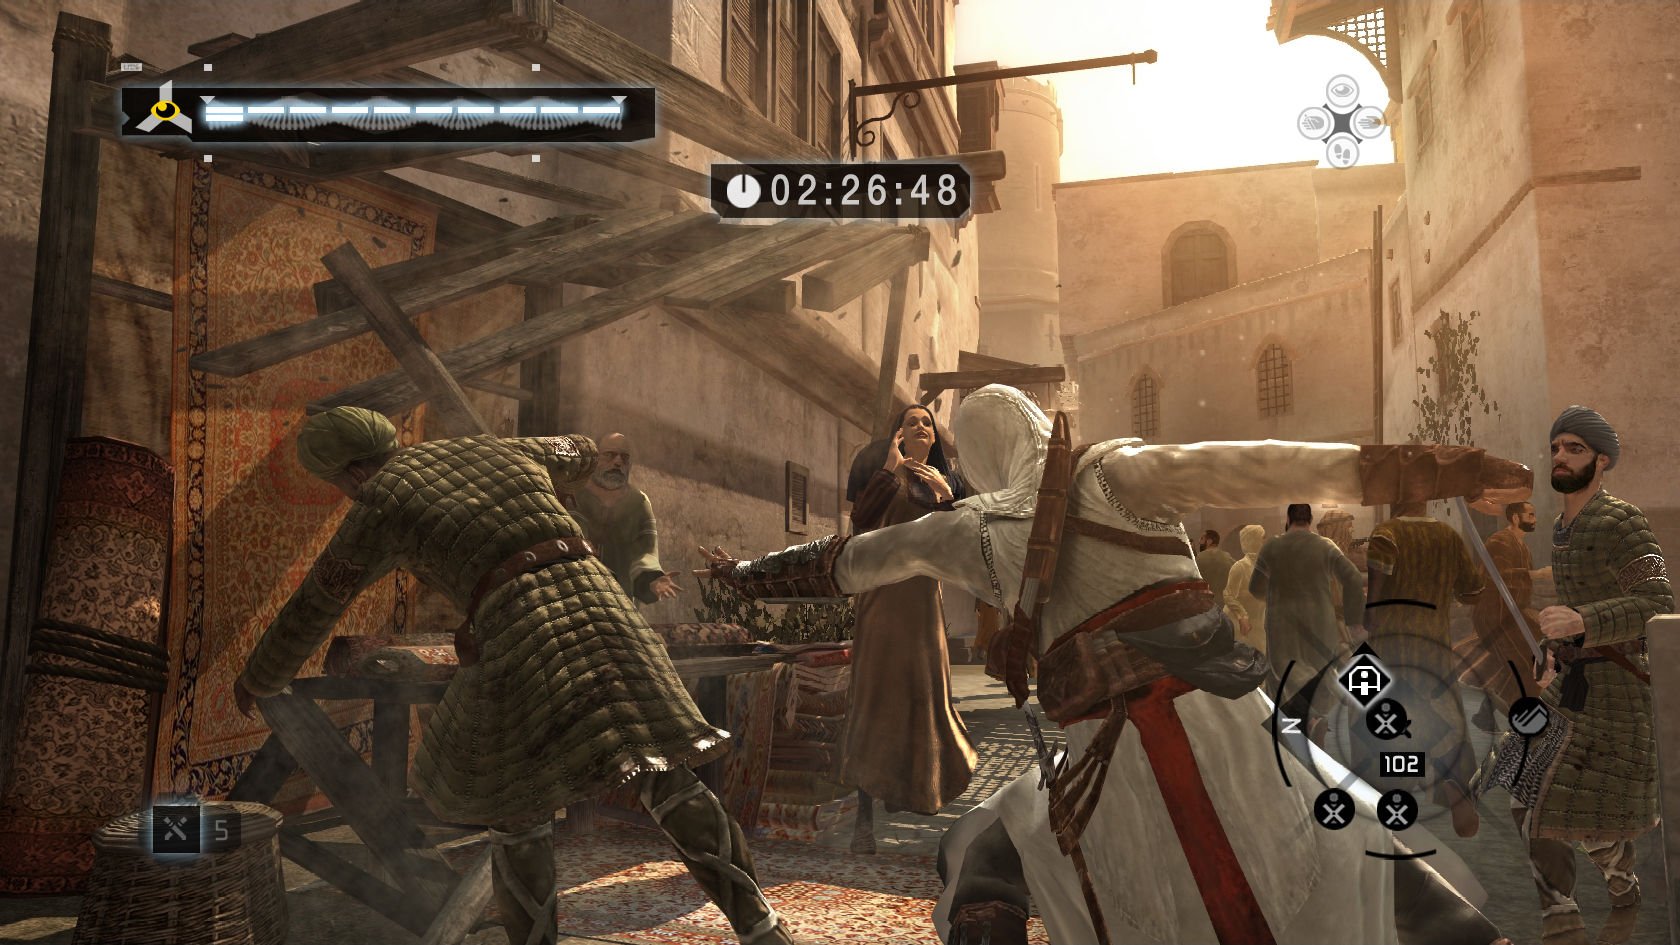 Creed похожие игры. Assassin's Creed 1 Скриншоты. Assassin's Creed 1 ps3 screenshot. Ассассинс Крид первая игра. Assassins Creed 2007 Скриншоты.